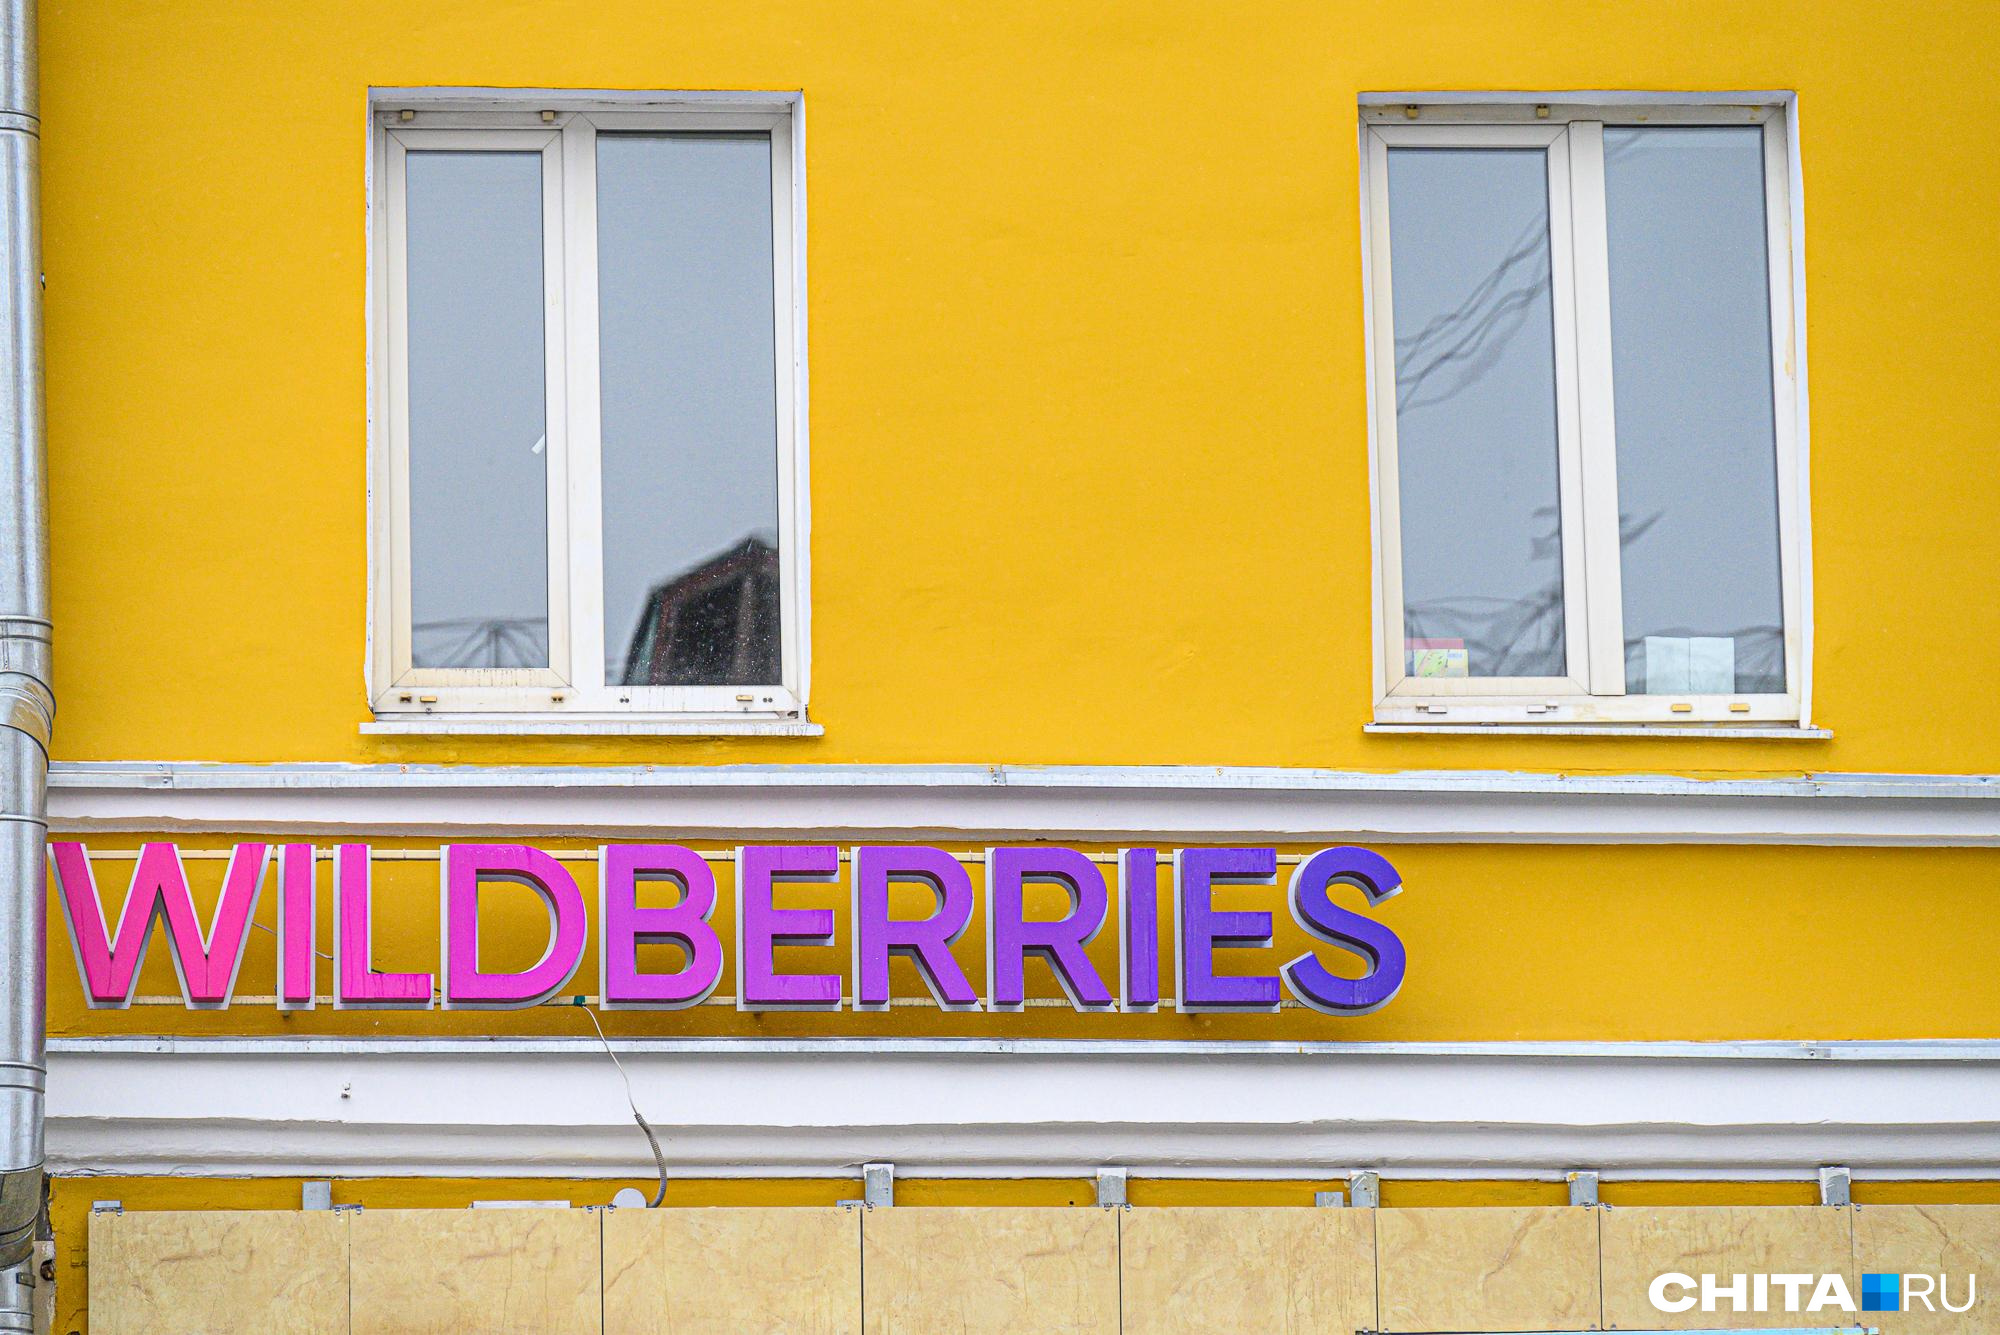 В Забайкалье обворовали пункт выдачи товаров Wildberries на сотни тысяч рублей